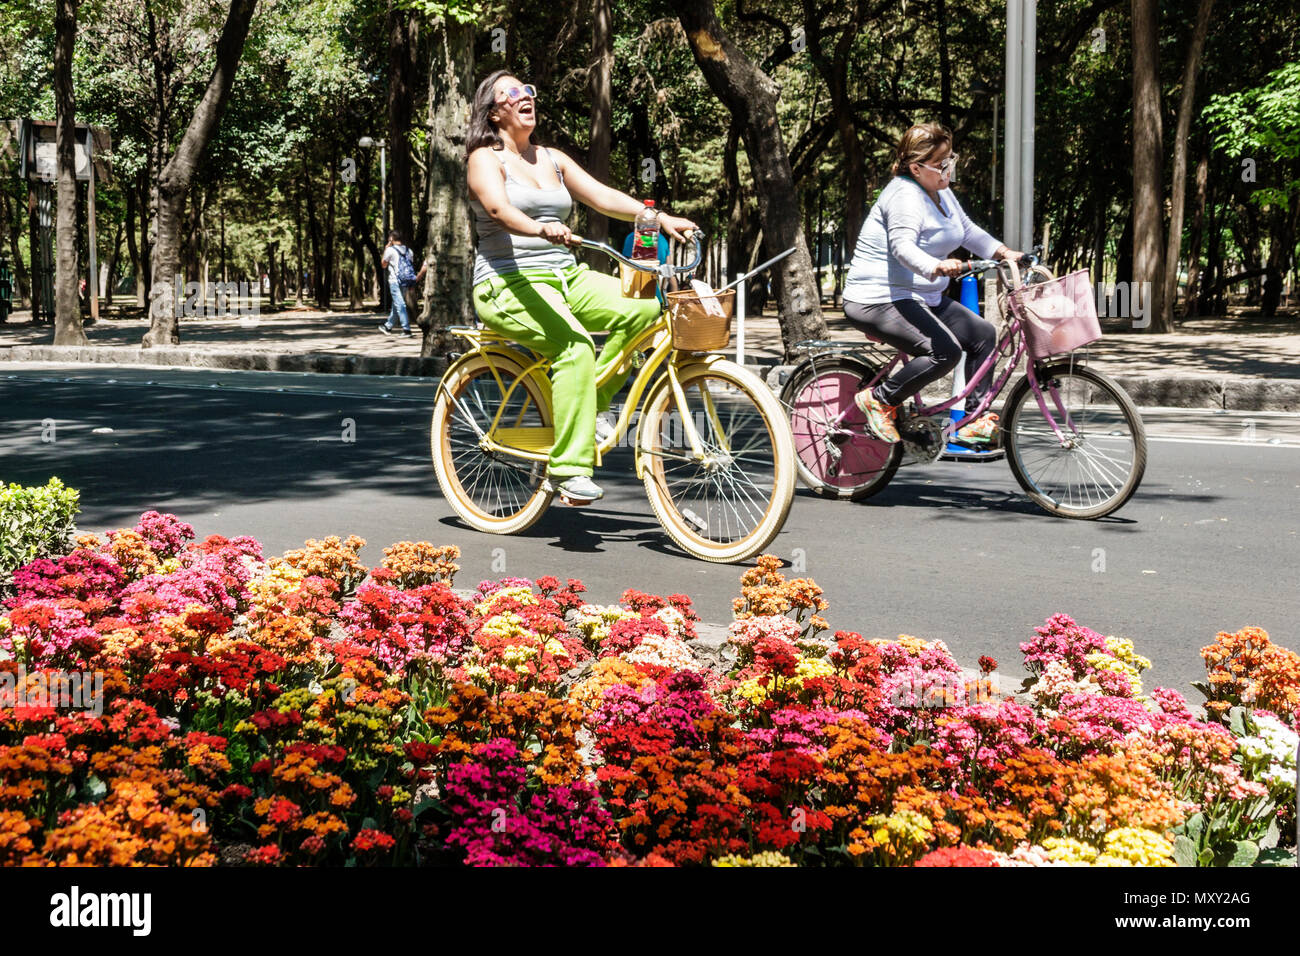 Mexiko-Stadt, Hispanic Bosque de Chapultepec Forest, Paseo la Reforma, Muevete en Bici, Bewegen mit dem Fahrrad, autofreie Sonntage Fahrrad Fahrräder Radfahren Reiten bik Stockfoto